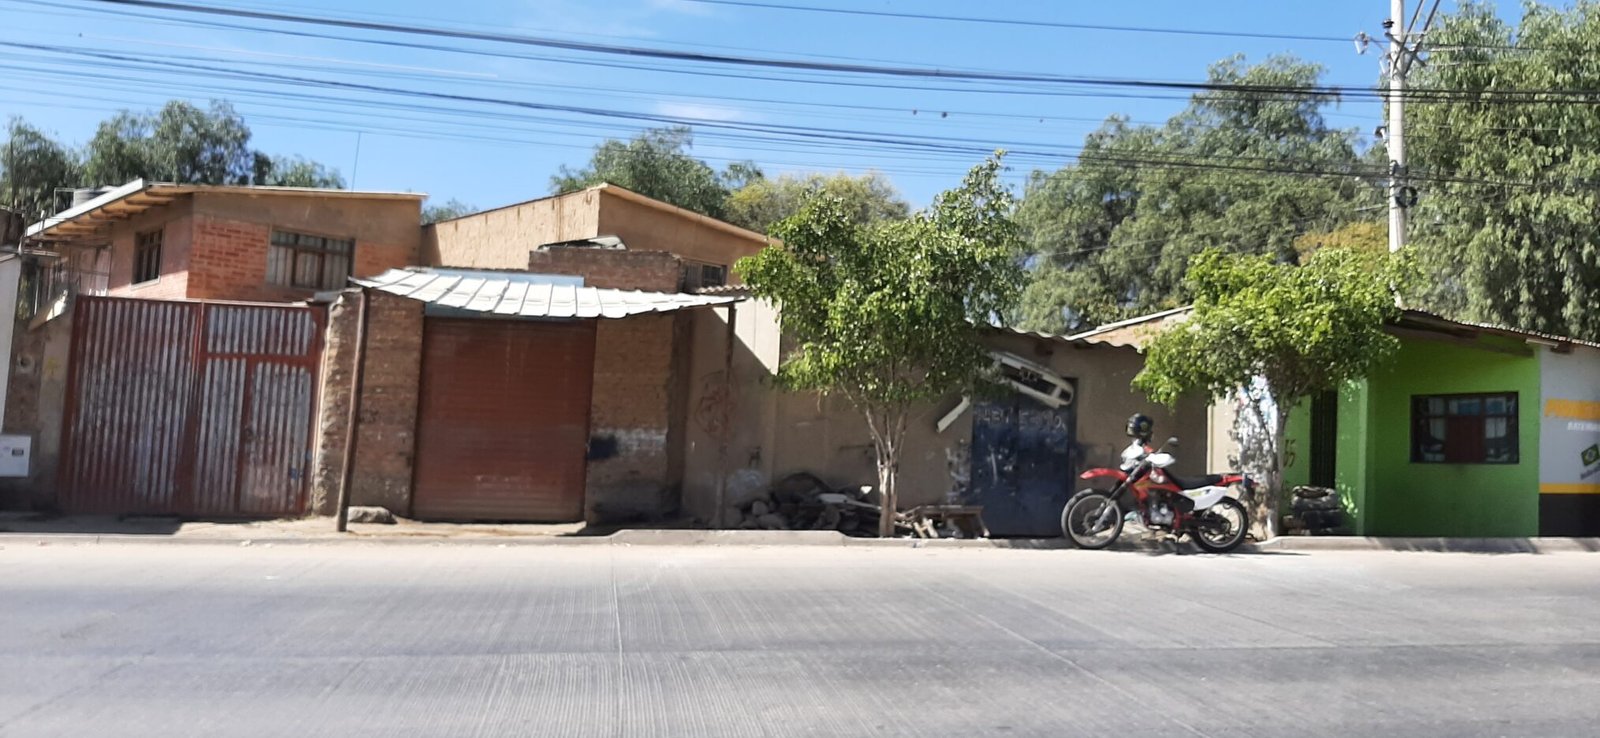 Casas de gente pobre, en la ciudad de Cochabamba, Bolivia